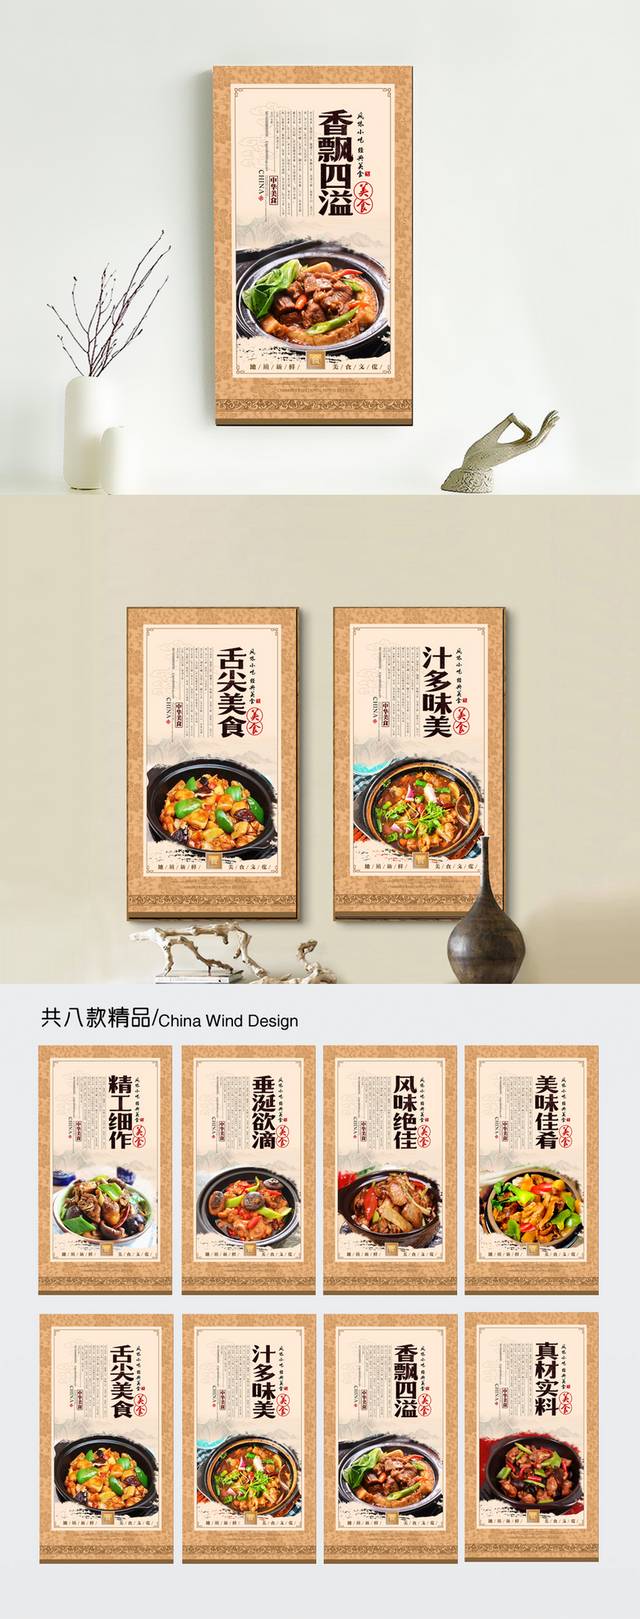 经典美食黄焖鸡米饭宣传海报